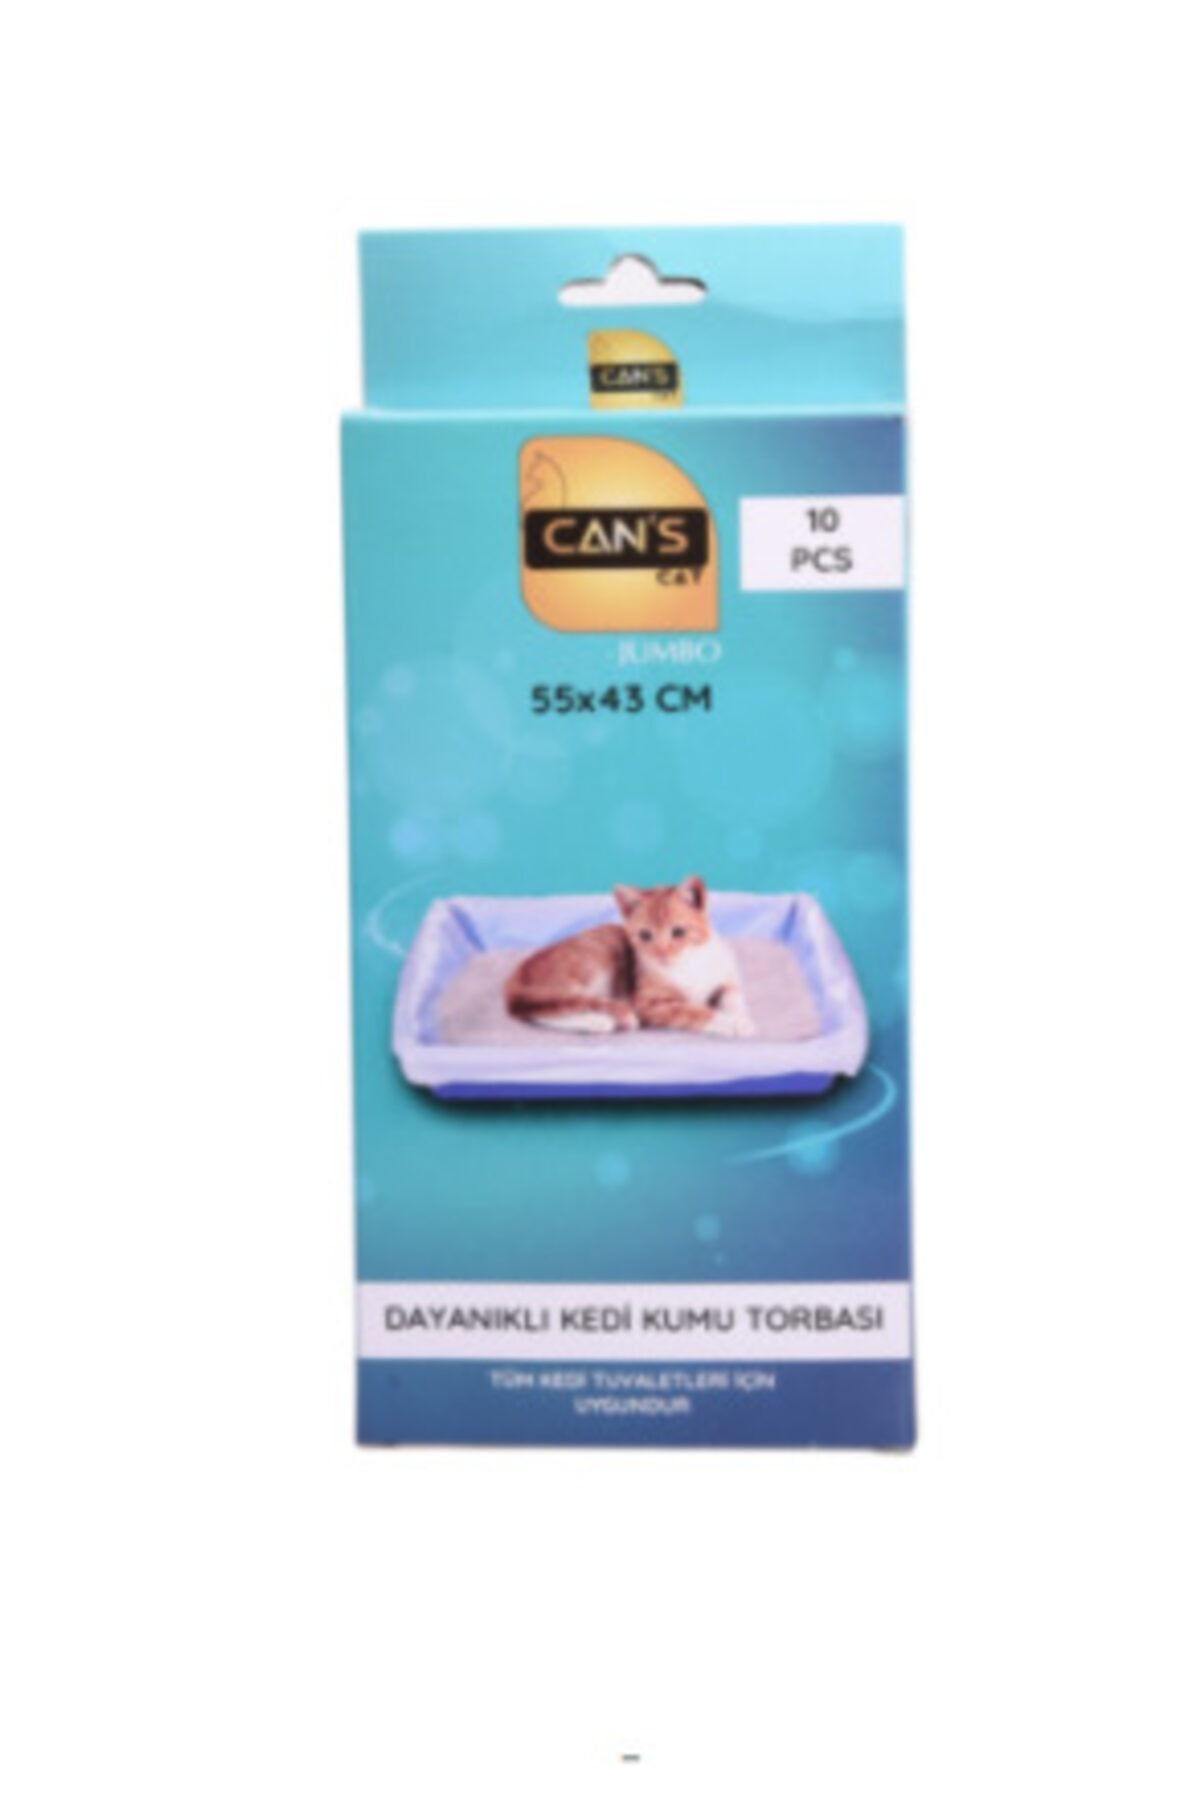 Can's Cat Can's Dayanıklı Kedi Kum Kabı Torbası 10'lu